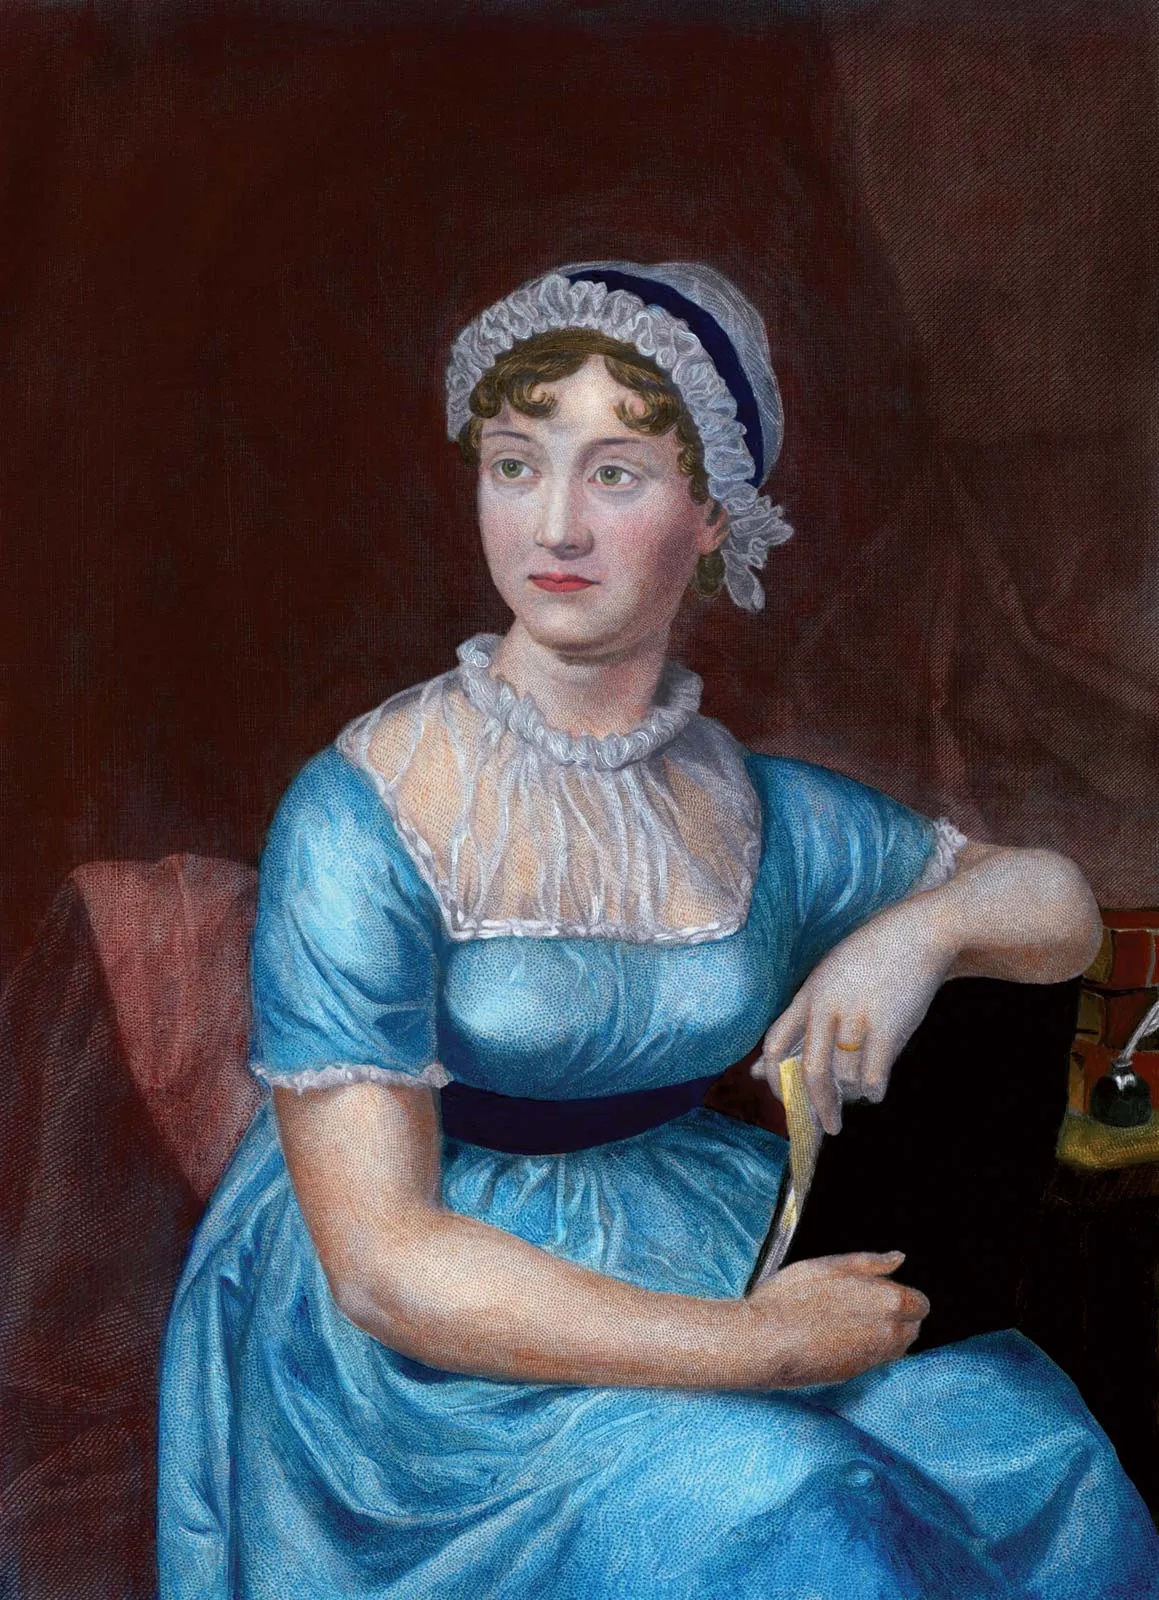 Jane-Austen.jpg